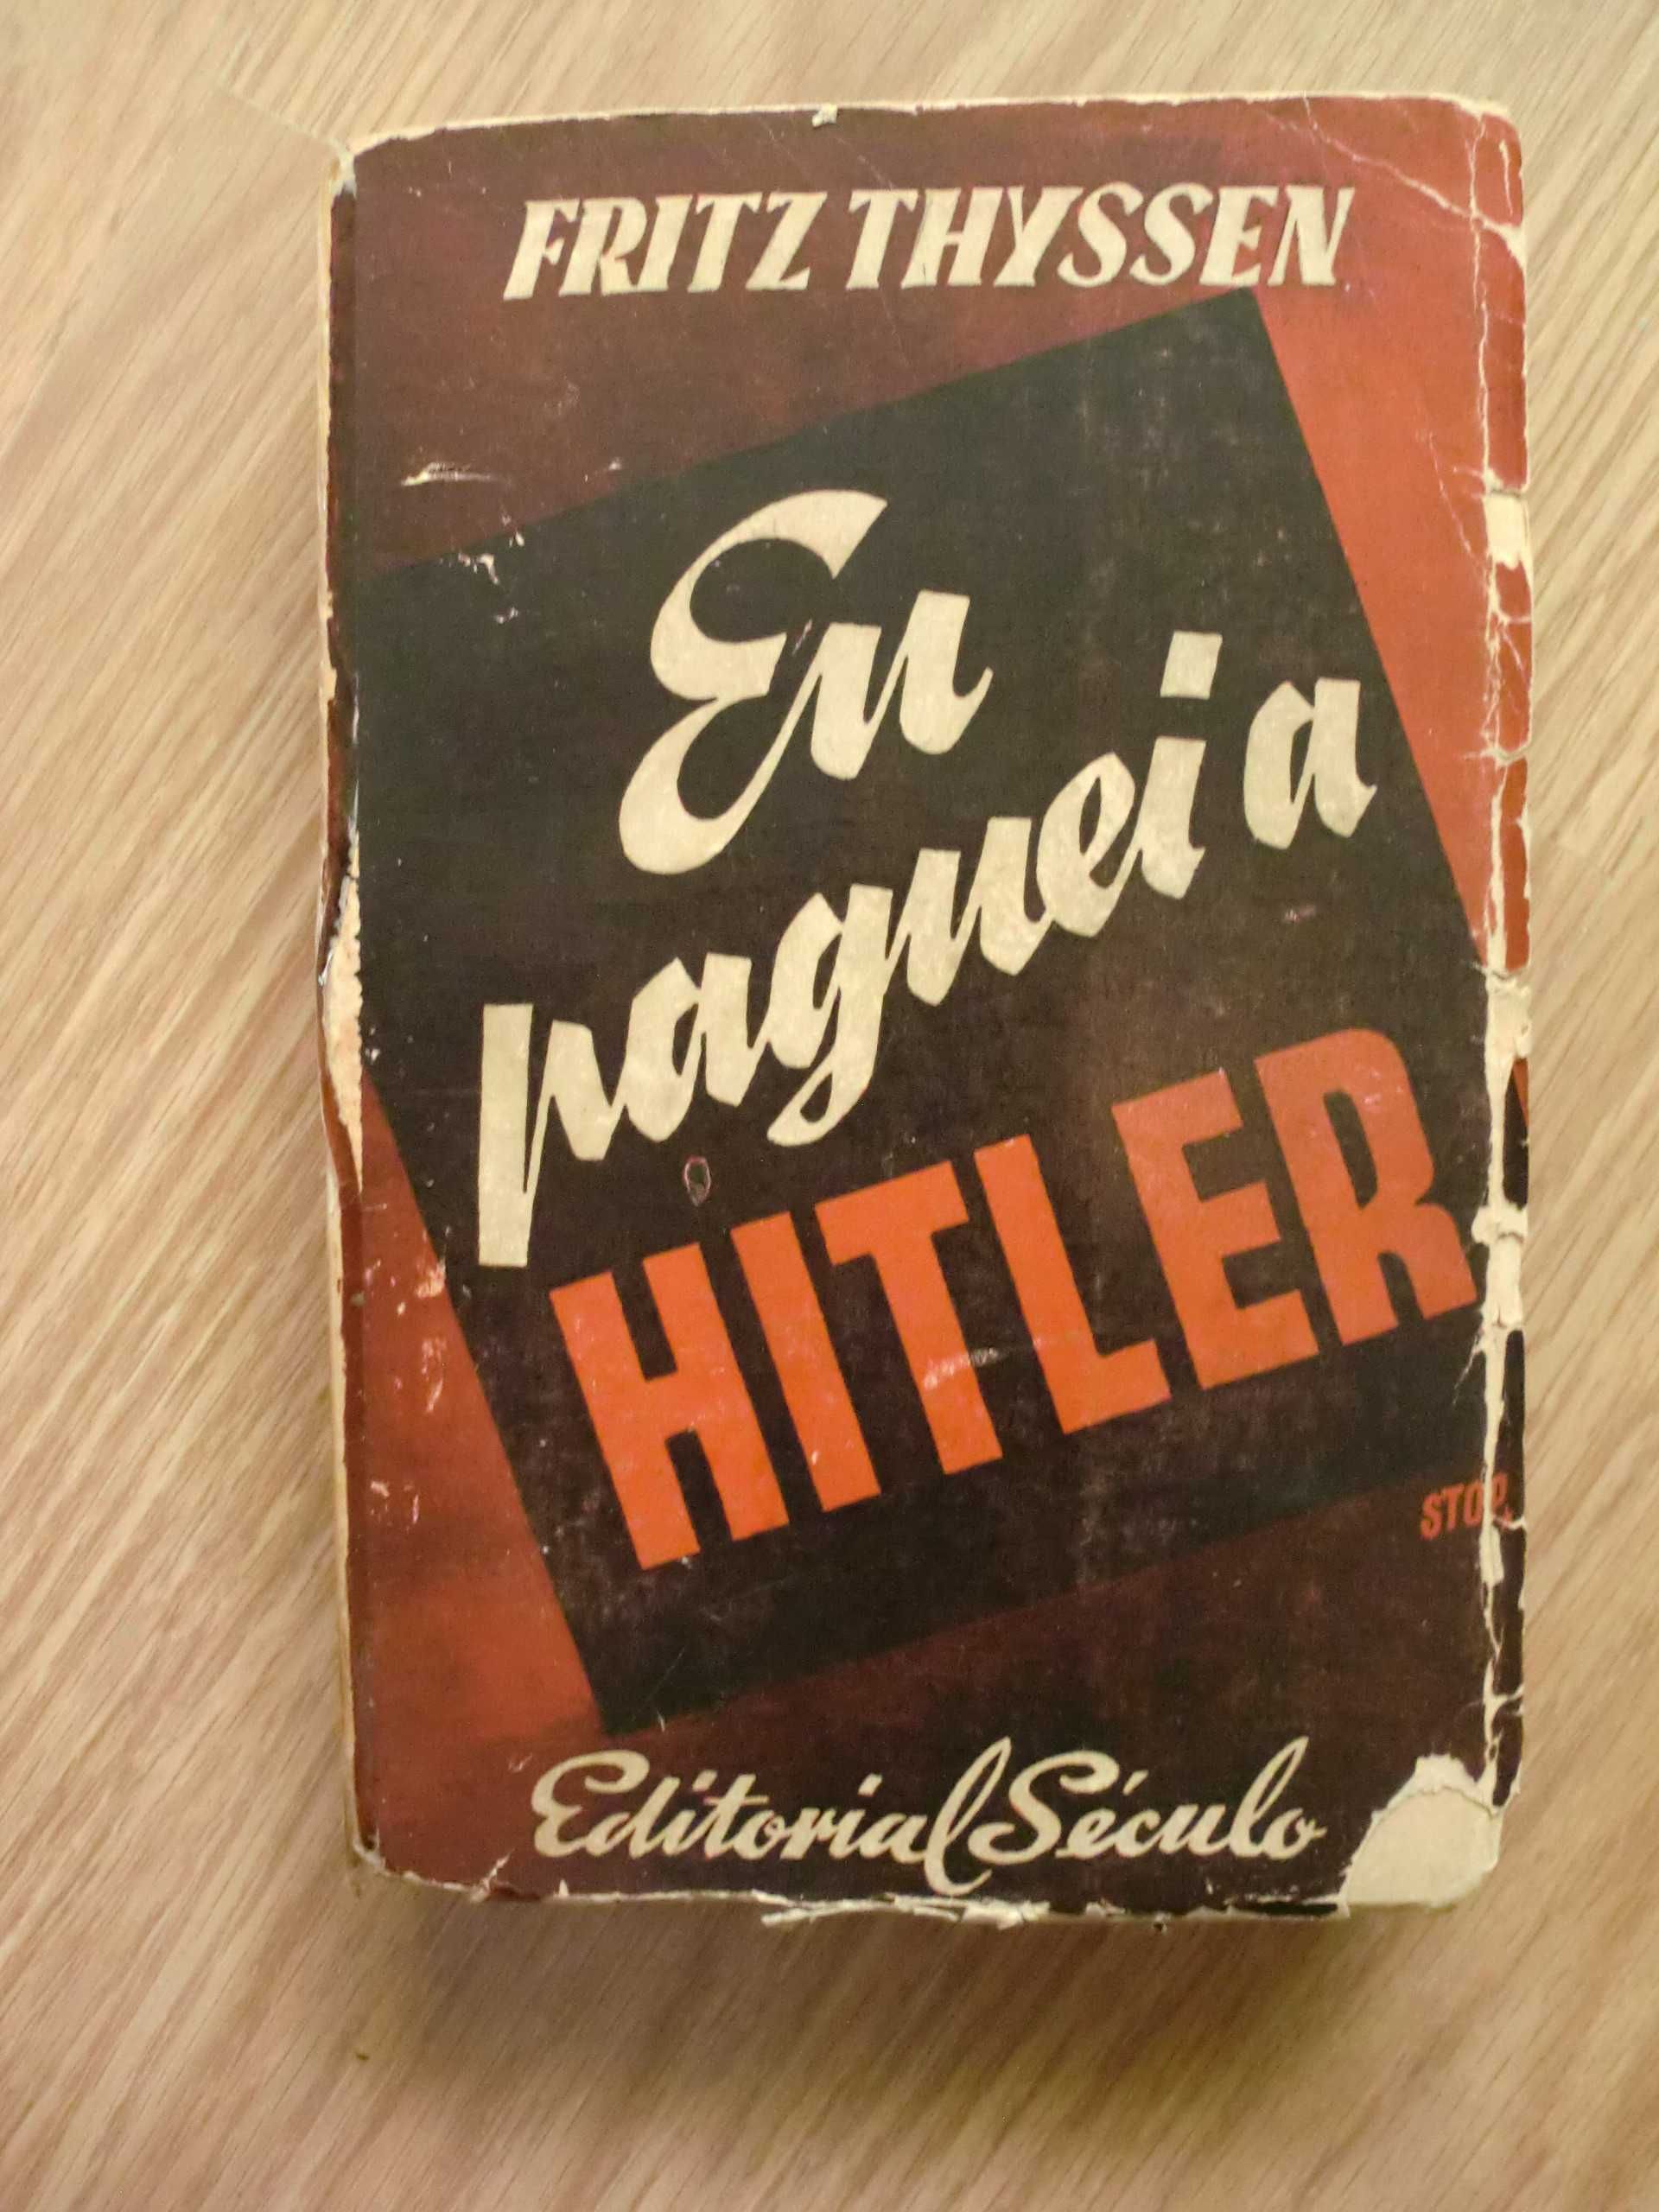 Eu paguei a Hitler de Fritz Thyssen